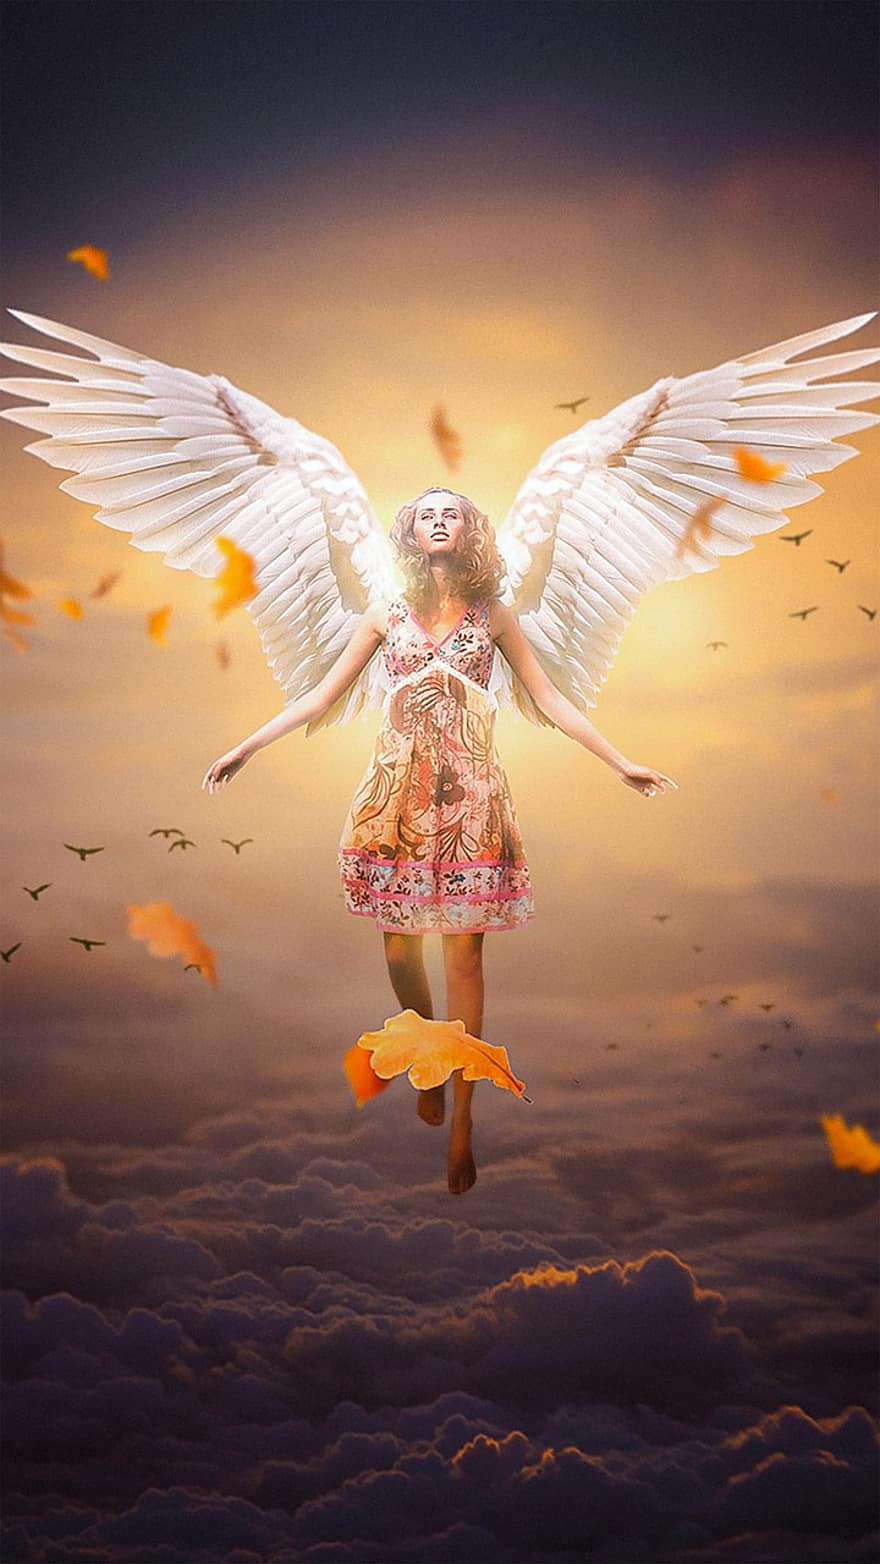 Thiên thần, giống cái, cánh, đàn bà, đôi cánh thiên thần, tưởng tượng, thiên thần nữ, mơ, bầu trời, con gái, photomontage